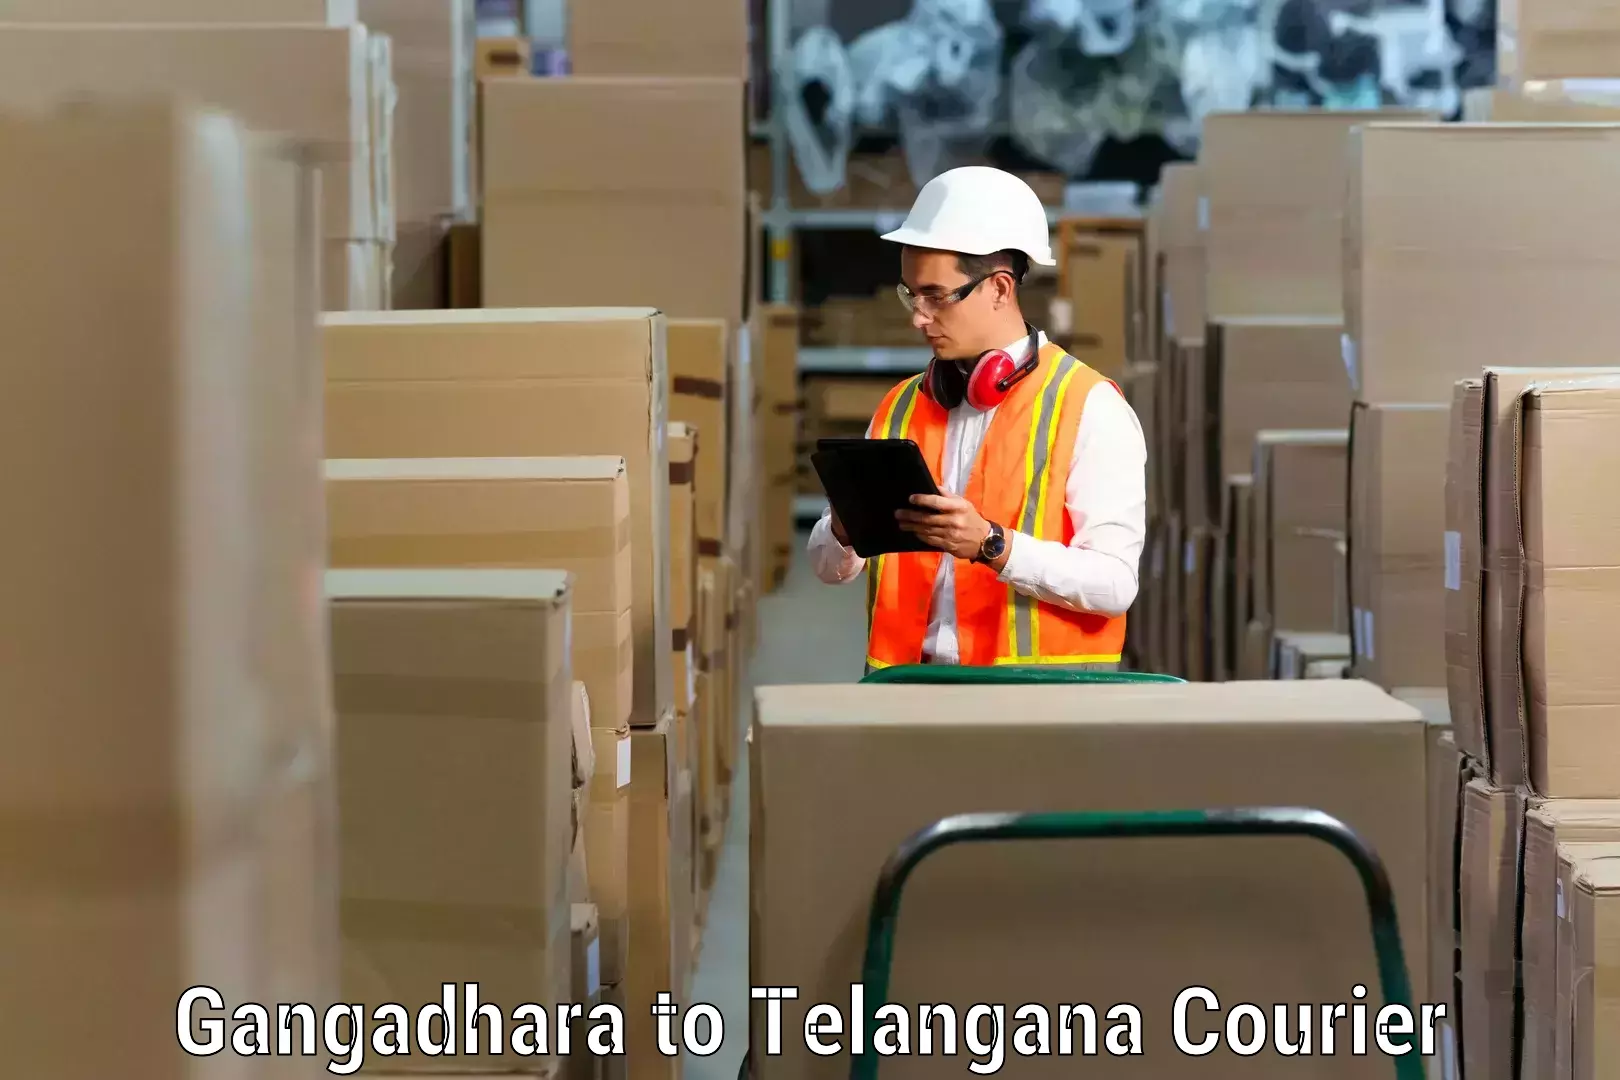 Trusted moving company Gangadhara to Yerrupalem